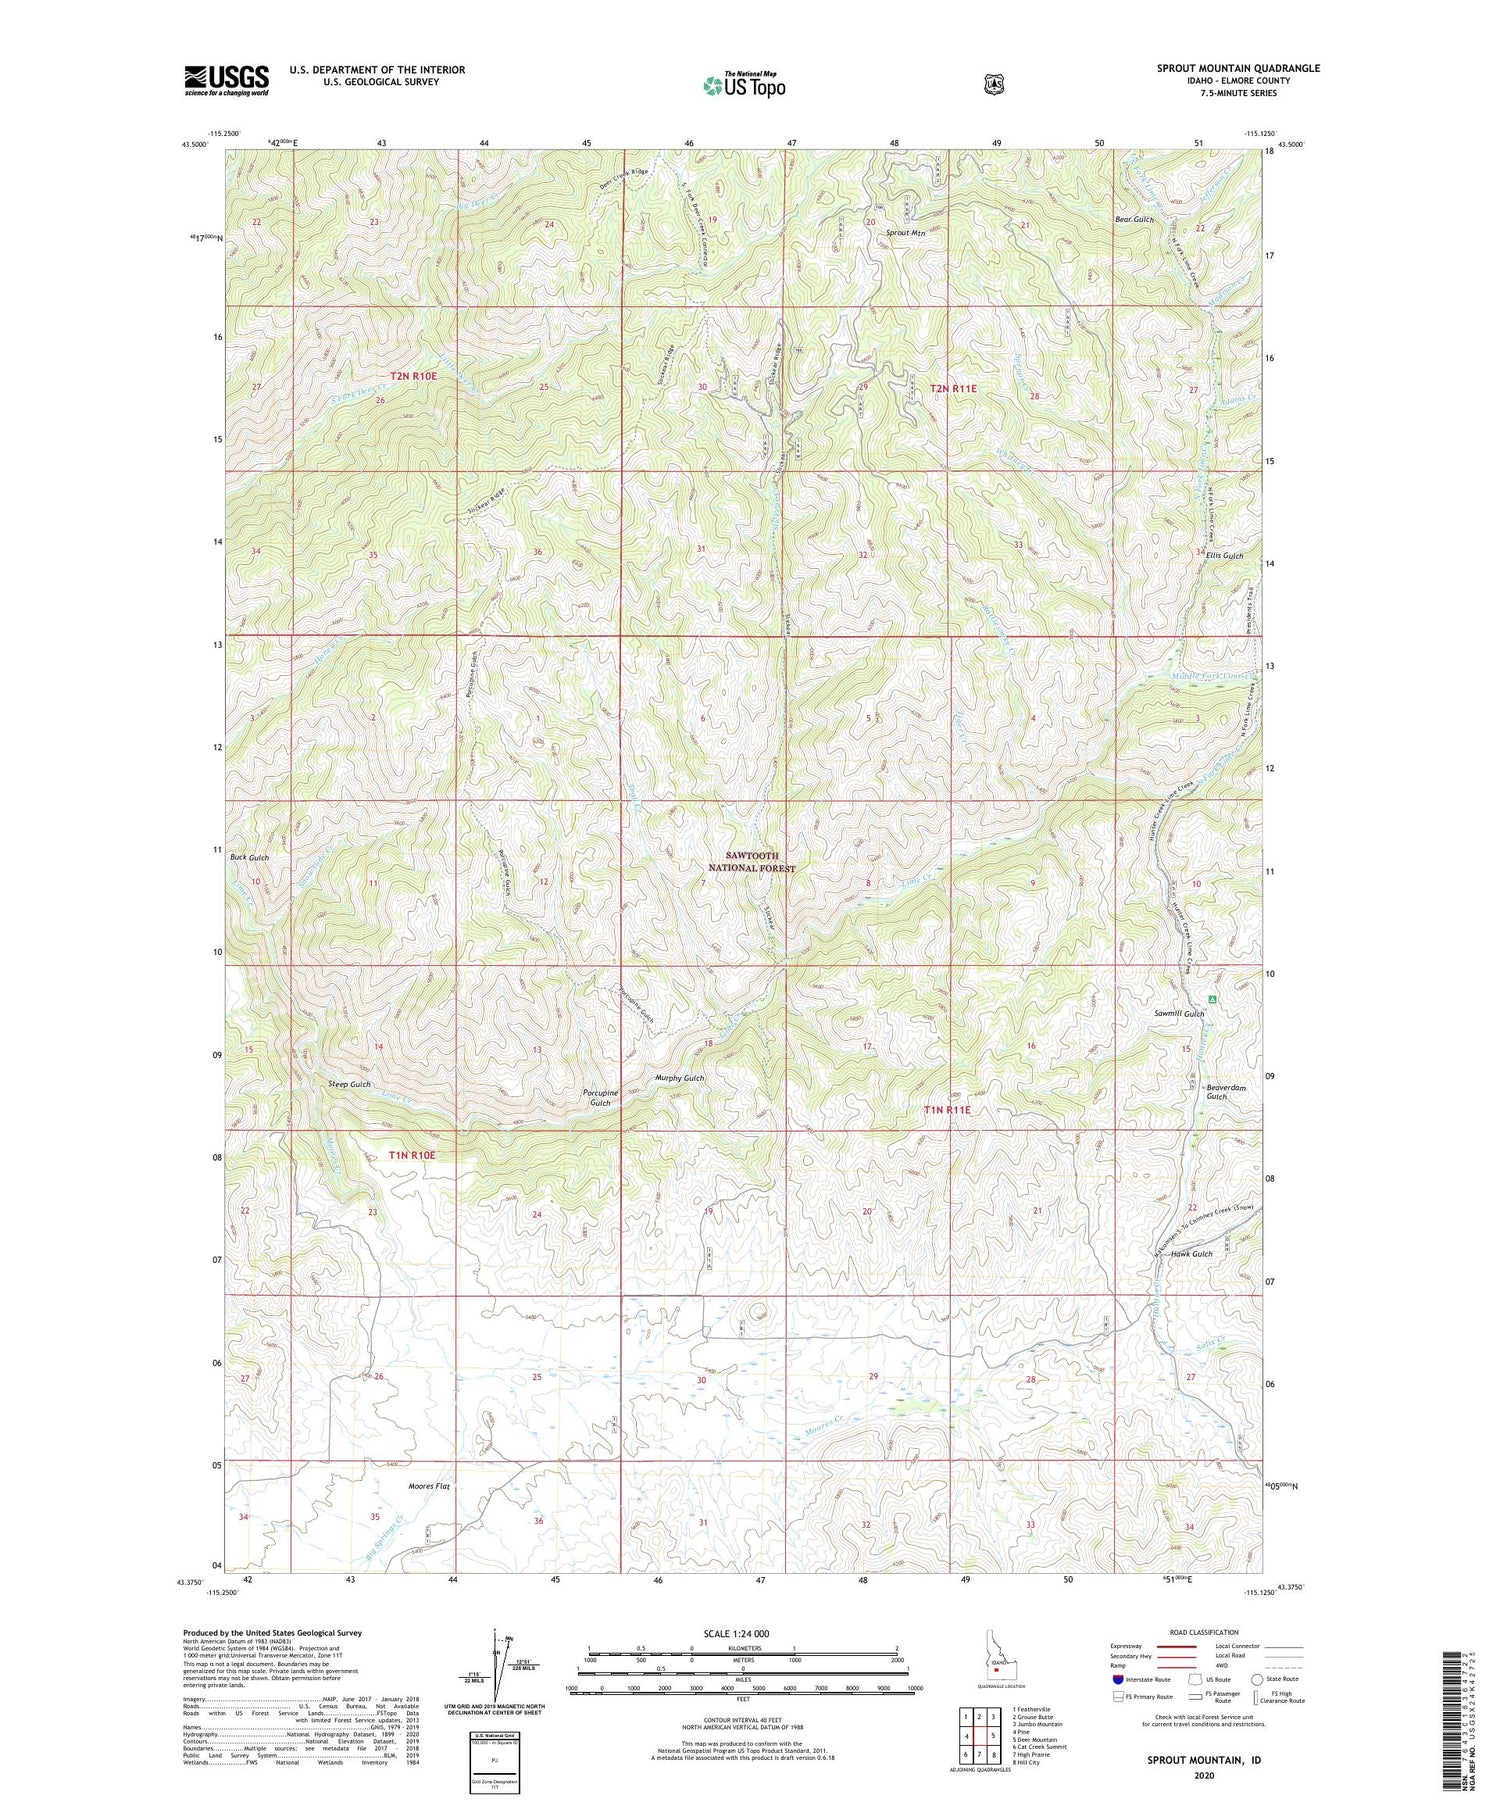 Sprout Mountain Idaho US Topo Map Image